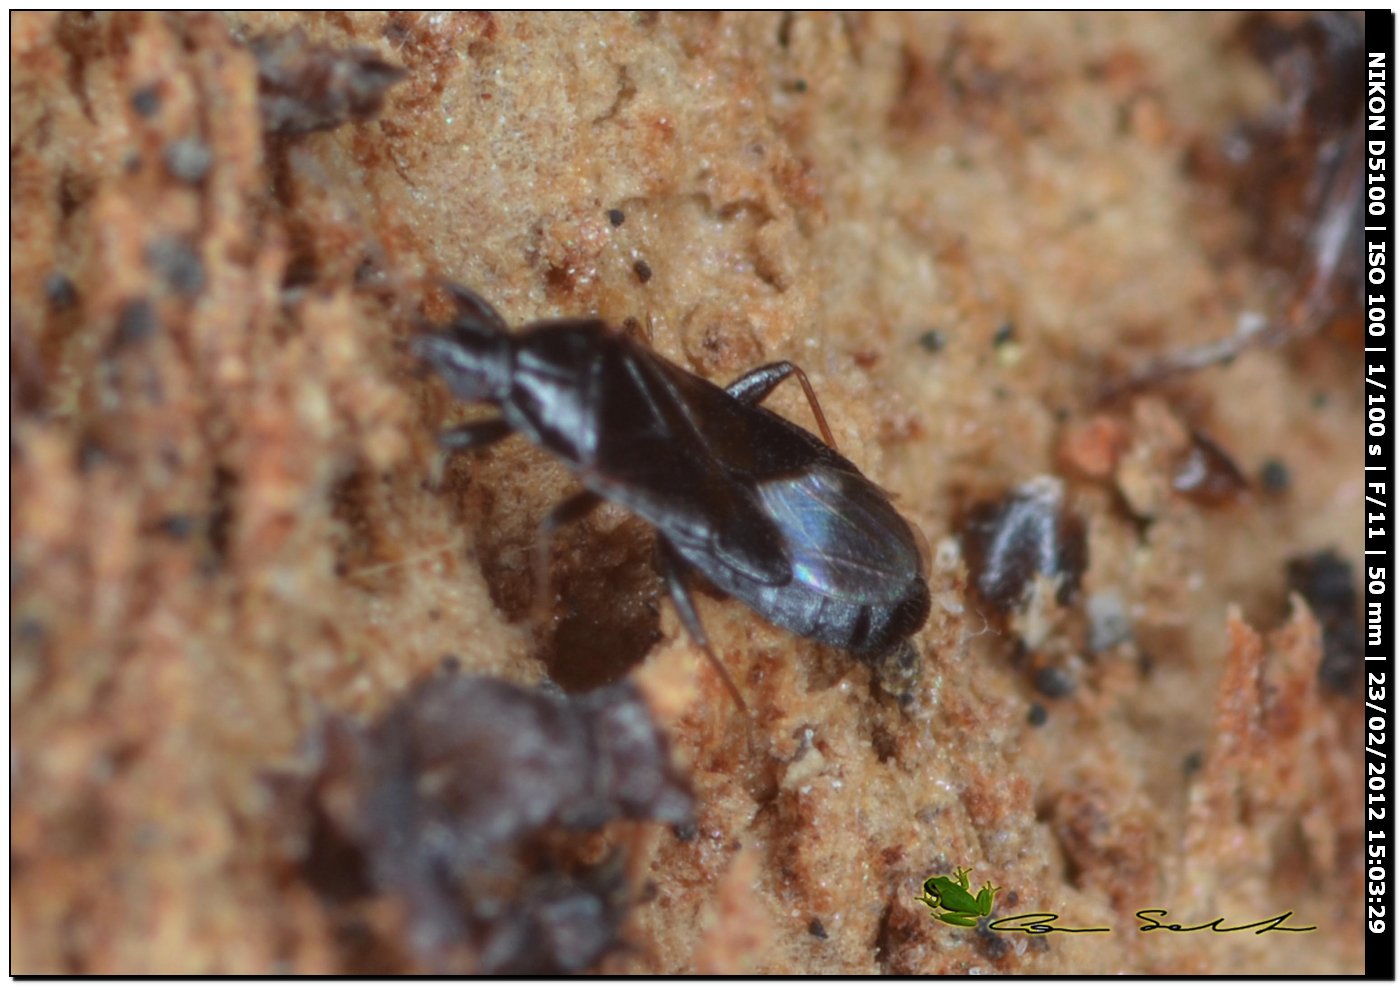 Anthocoridae: Dufuriellus ater da Uri (Sardegna)